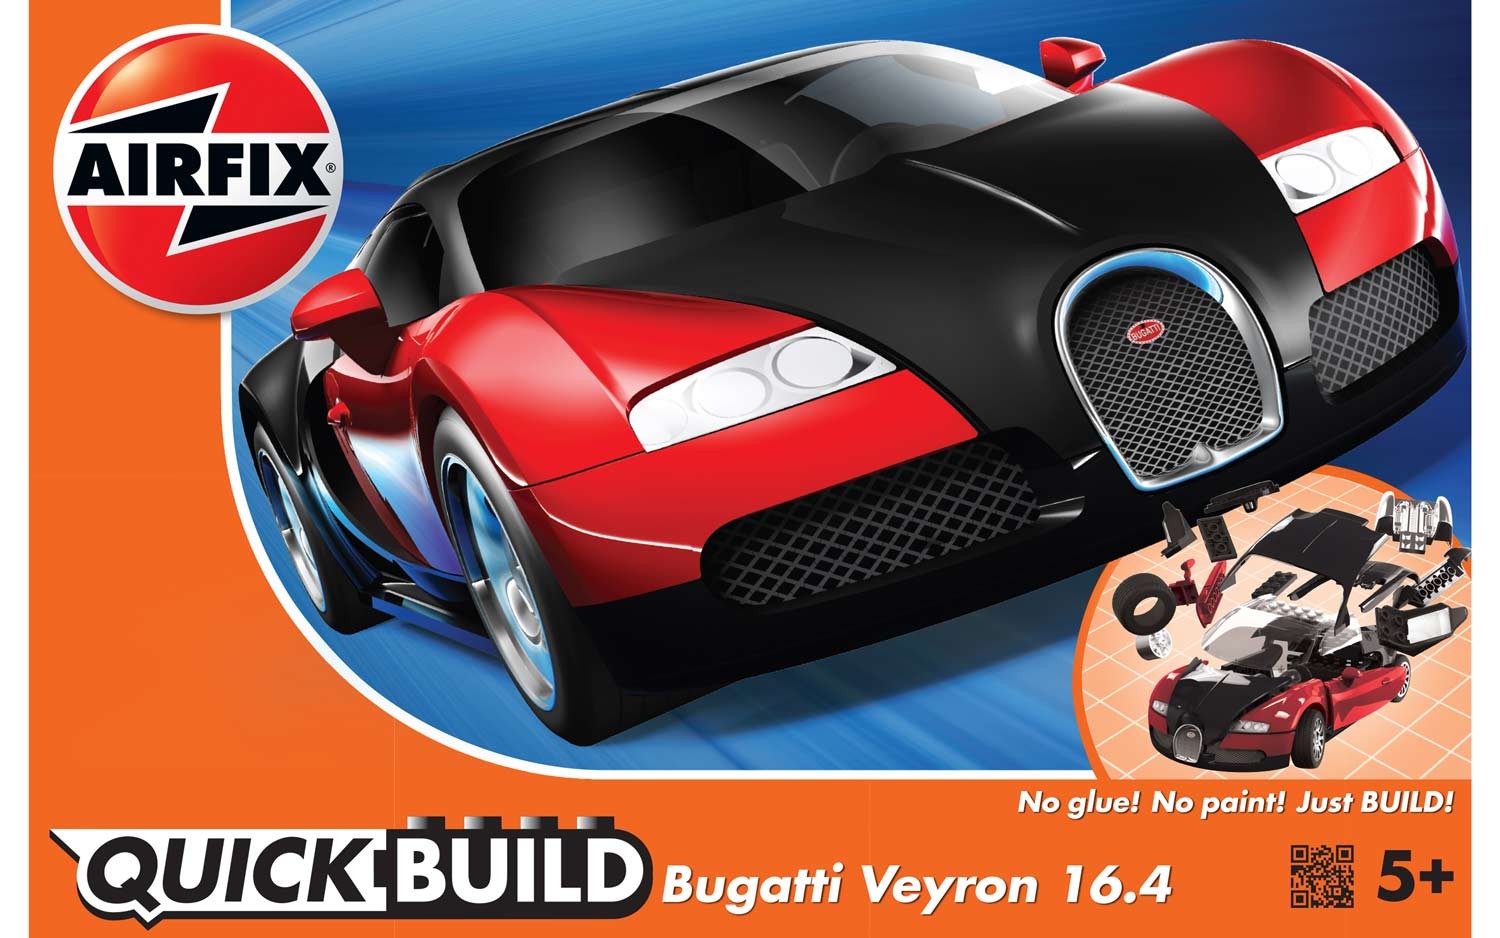 Airfix j6020 Quickbuild Bugatti Veyron 16.4 geen lijm geen verf alleen bouwen